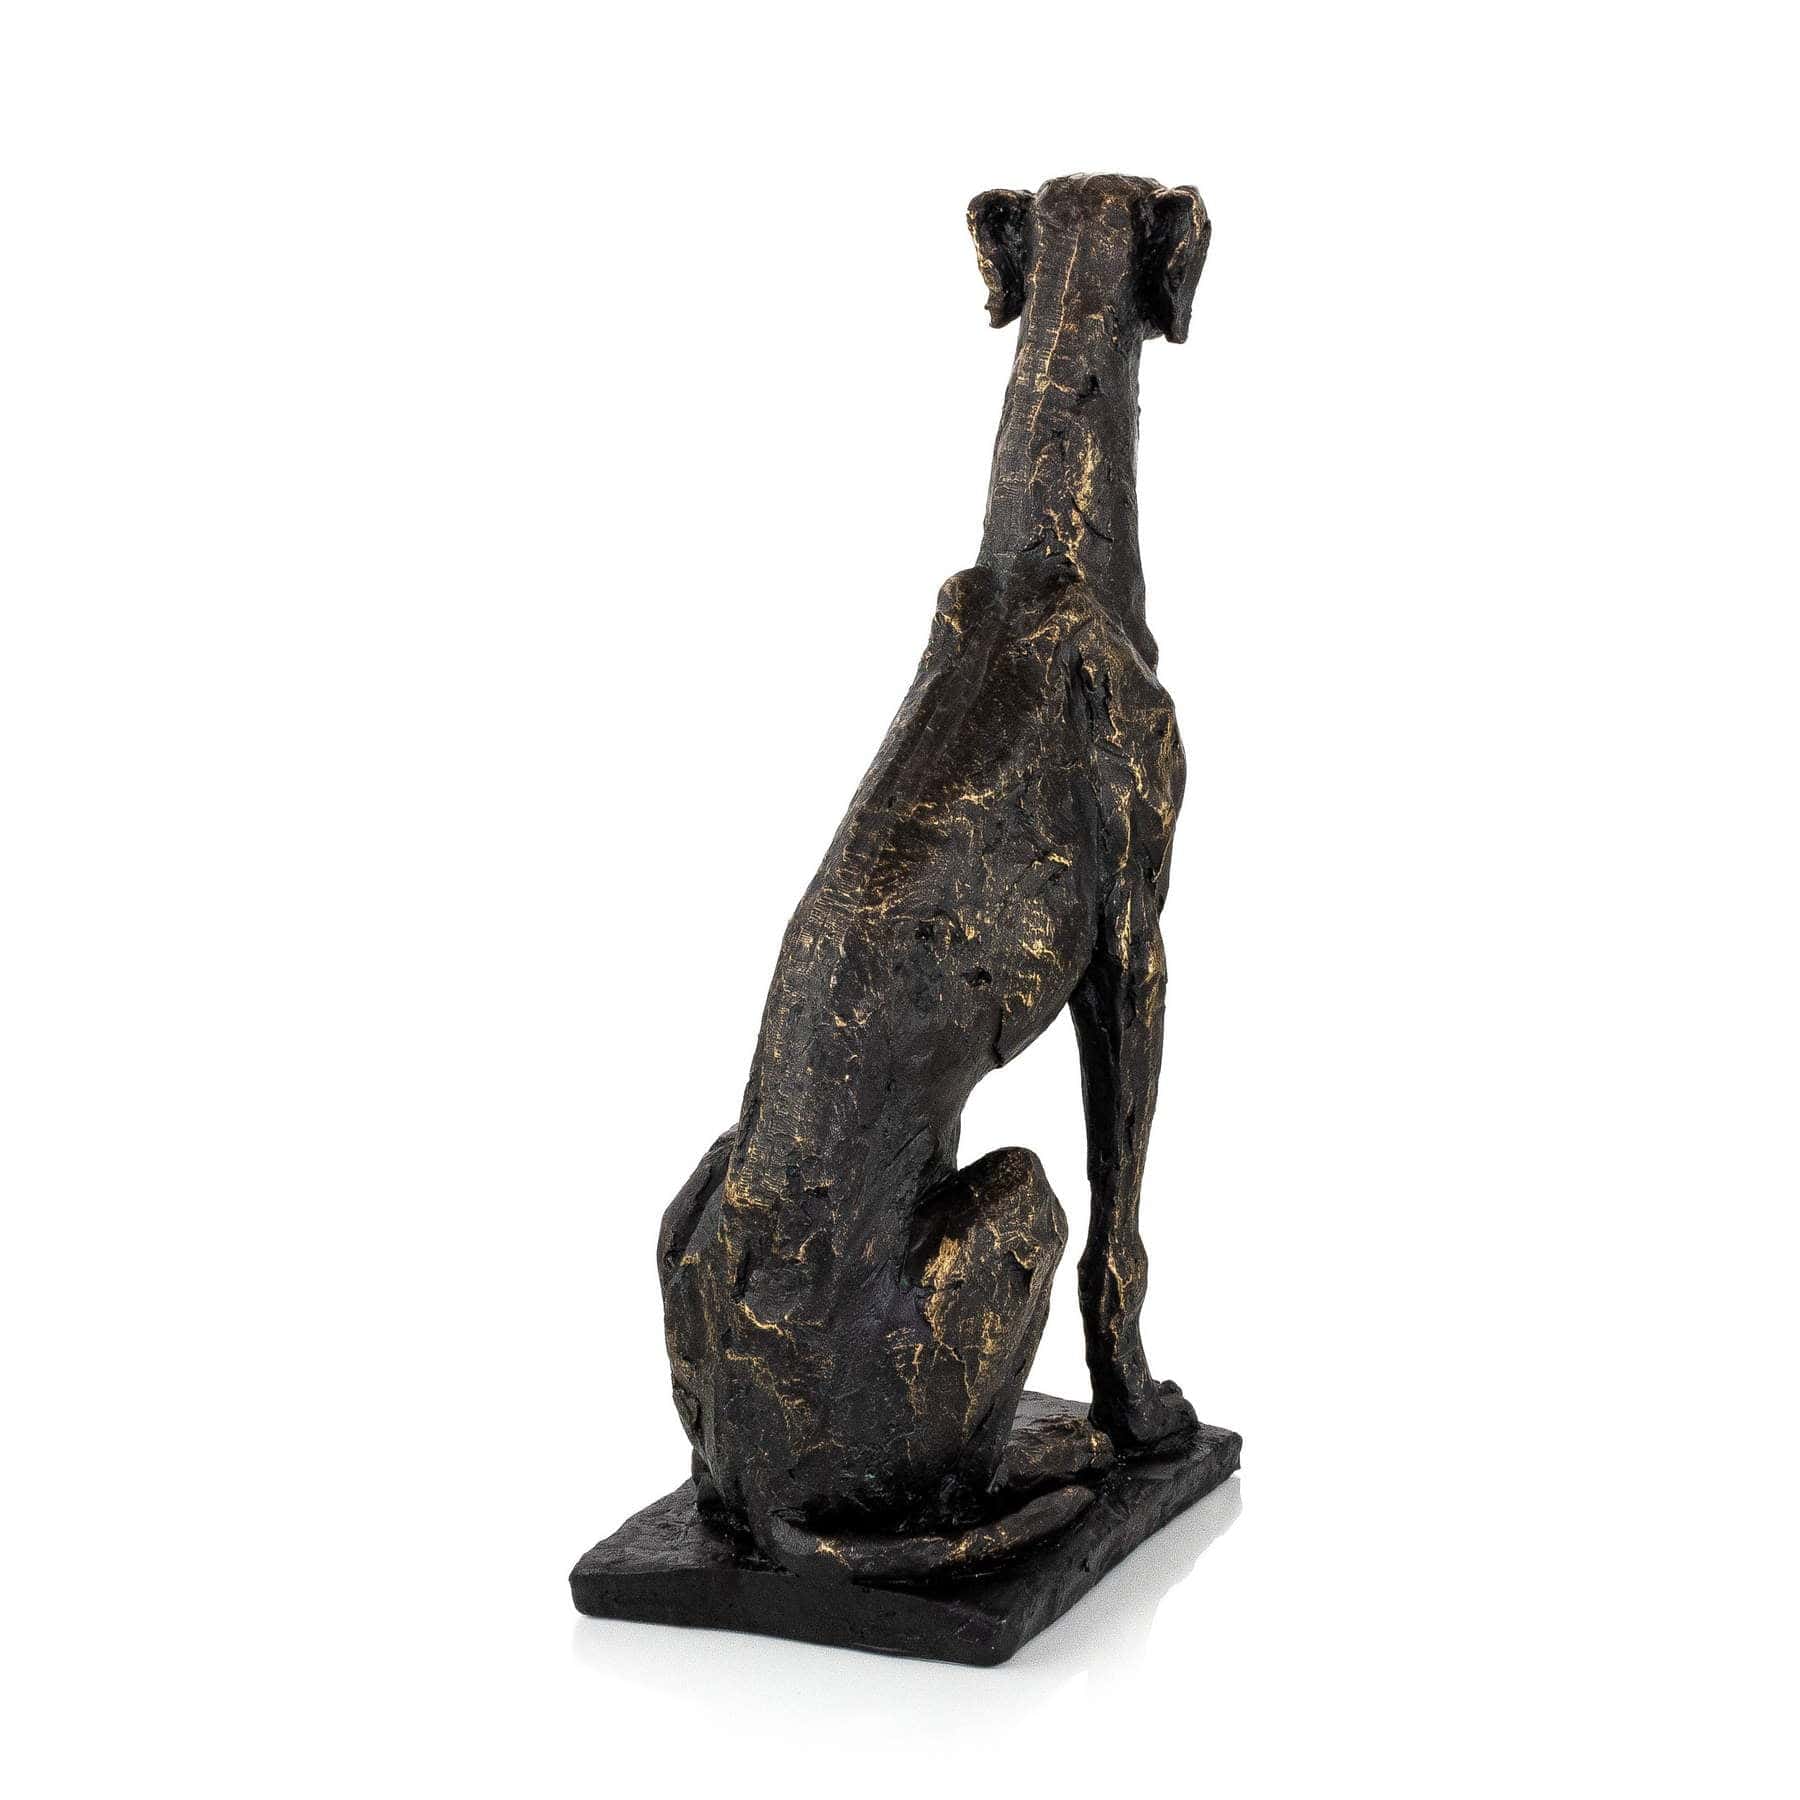 Grayhound Textured & Tall Dog Sculpture Sculptures & Statues